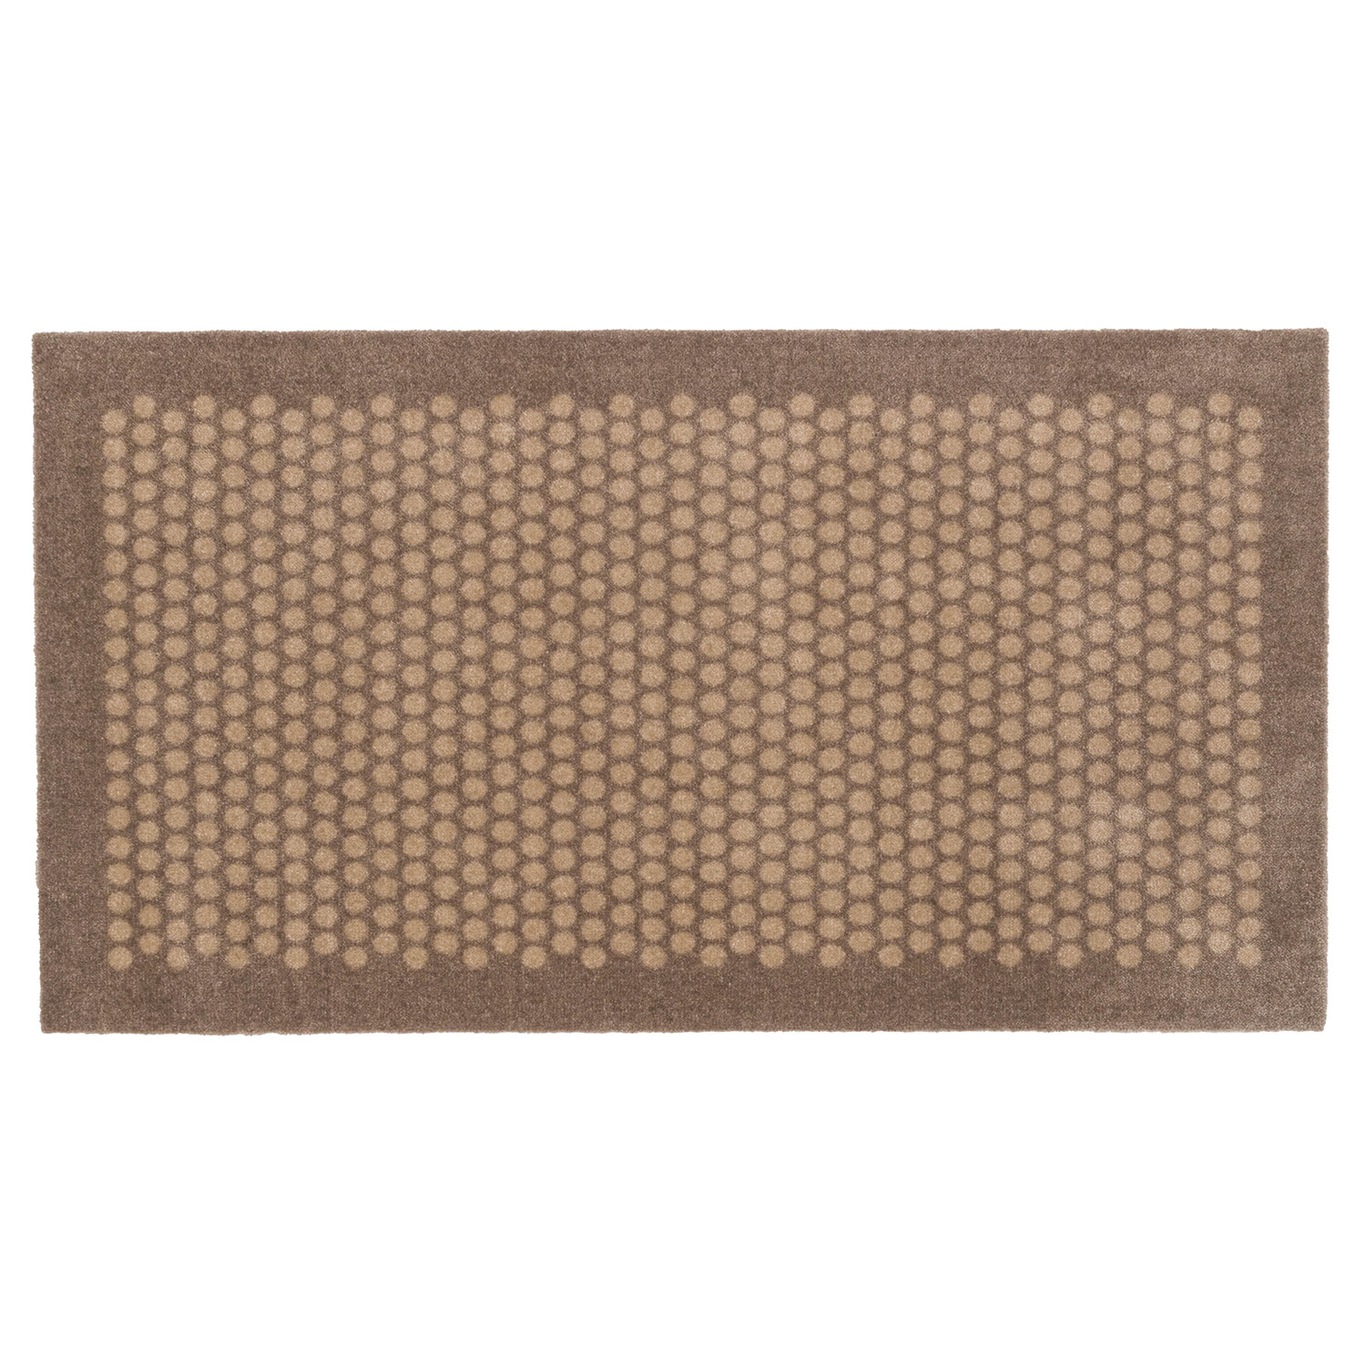 Dot Doormat 67x120cm, Sand